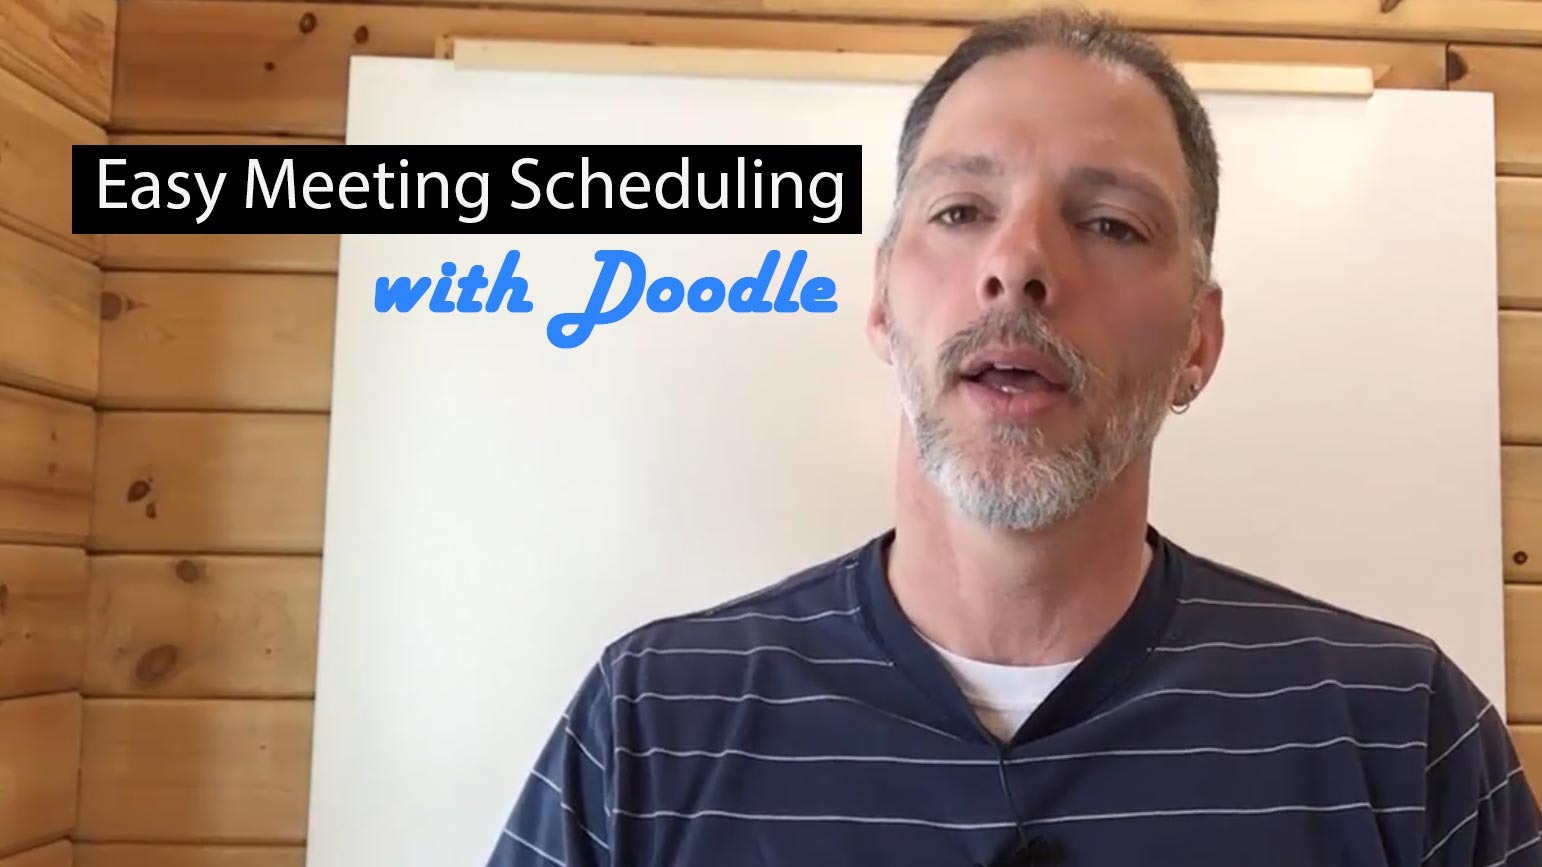 doodle - meeting scheduler